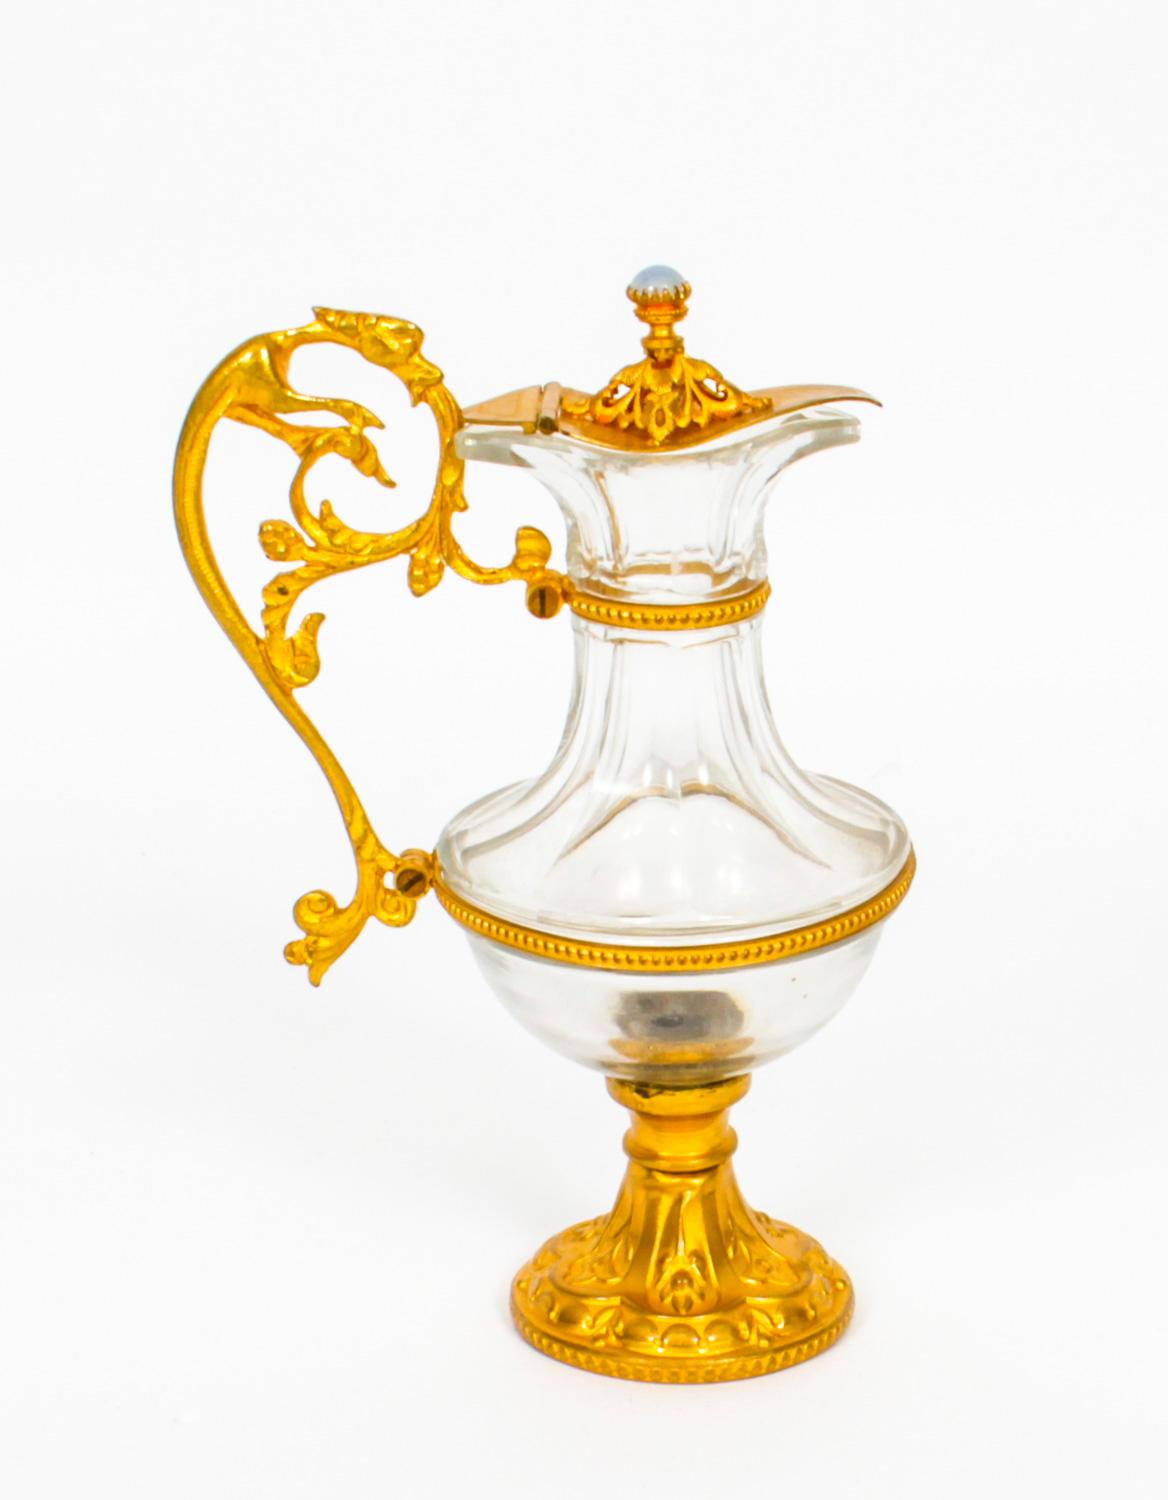 Dies ist ein wirklich hervorragendes, dekoratives, antikes Paar Ormolu-Gläser aus der Zeit um 1870.
Die aufklappbaren Deckel mit Cabouchon-Halbedelsteinen und Griffen mit Fabelwesen. Die facettierten Balusterkörper aus Glas sind mit perlenbesetzten